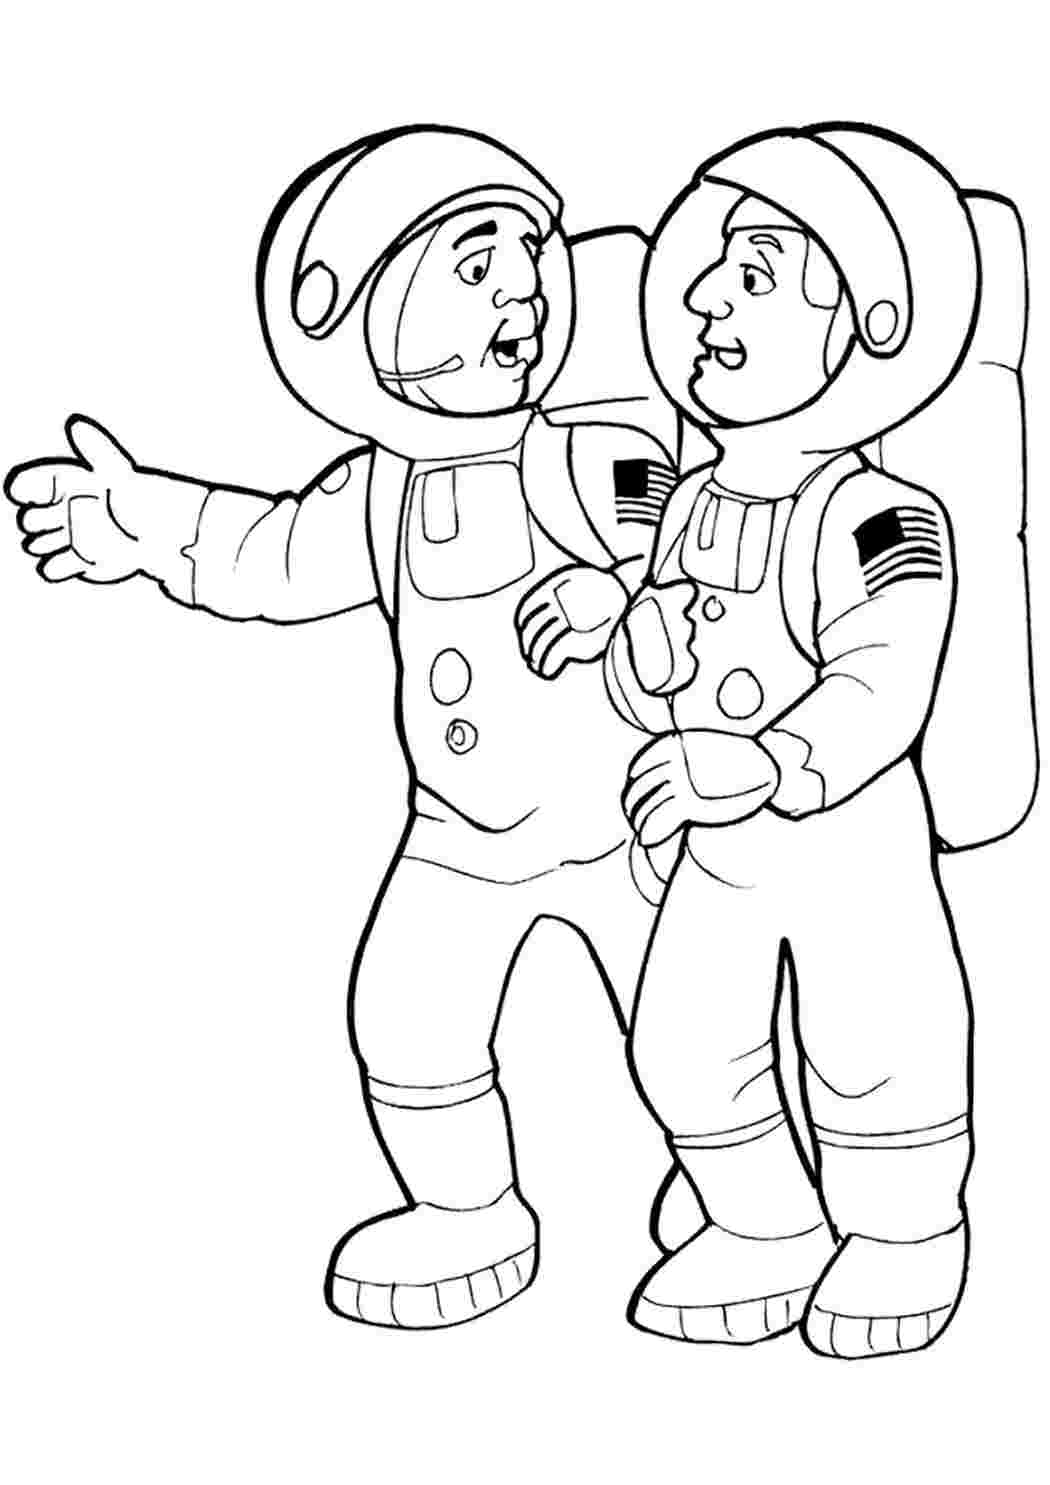 Космонавт шаблон для вырезания распечатать. Космонавт раскраска. Космонавт раскраска для детей. Космонавт раскраска для малышей. Космонавтика раскраски для детей.